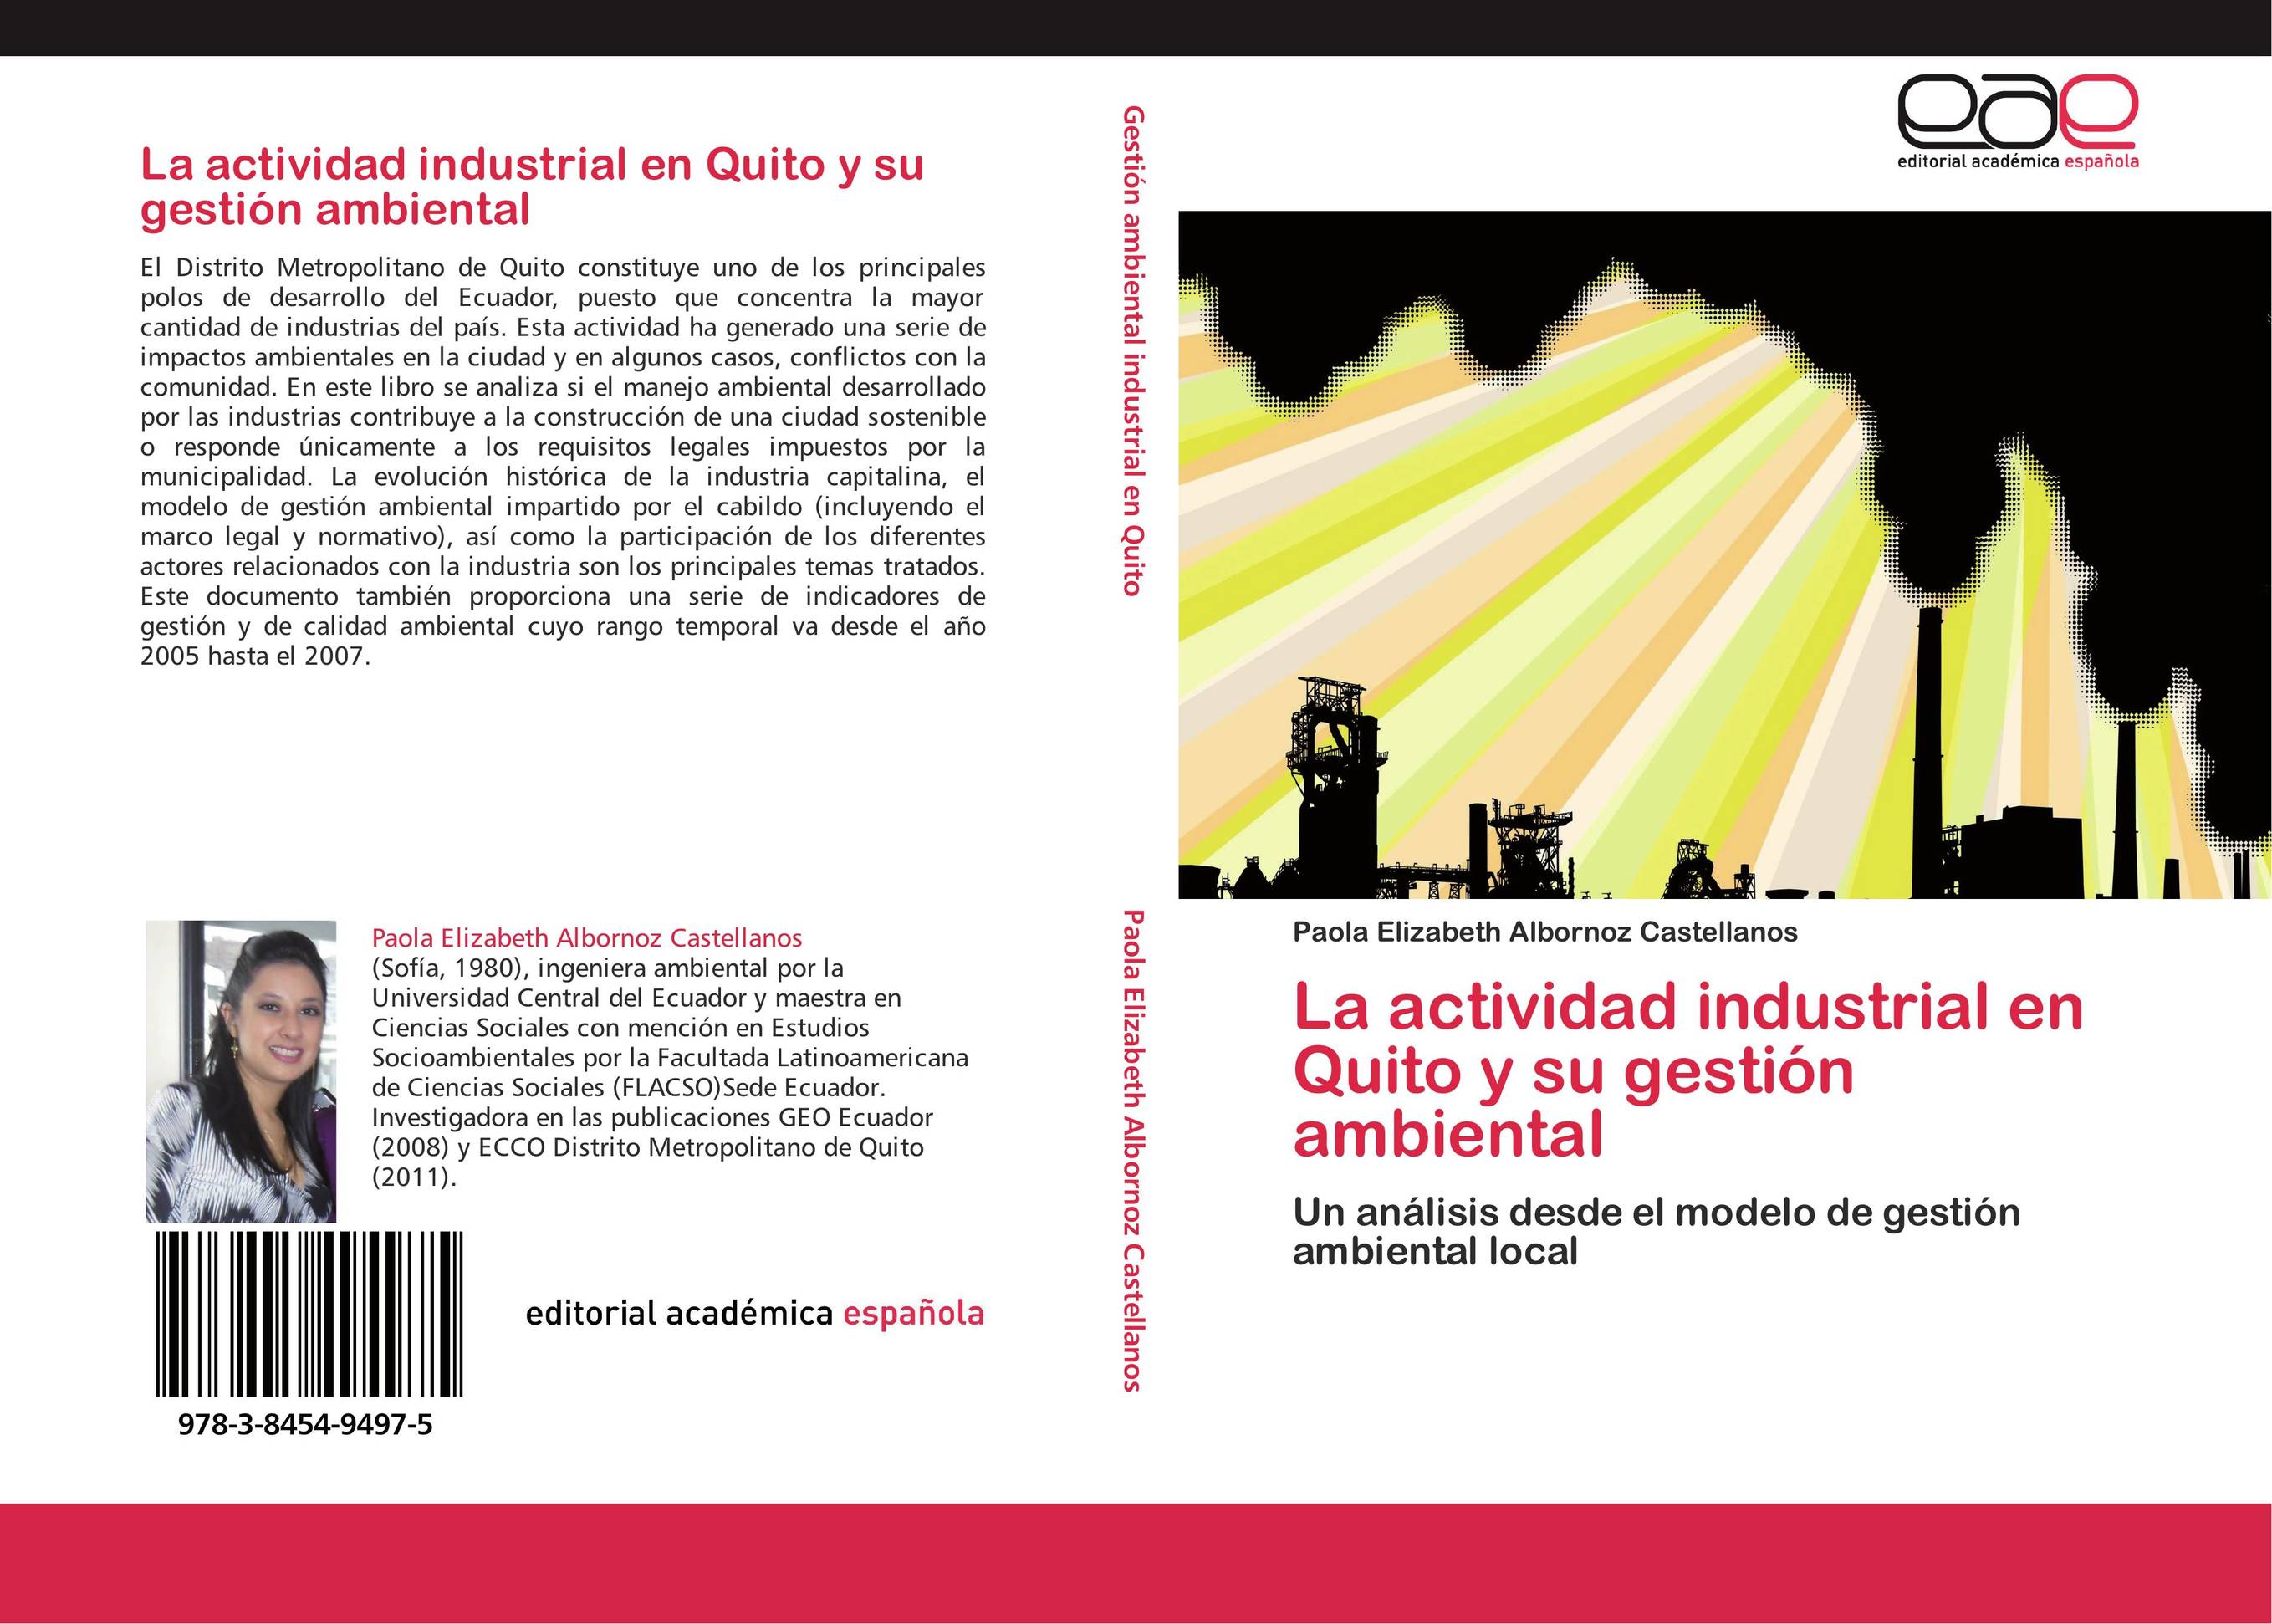 La actividad industrial en Quito y su gestión ambiental